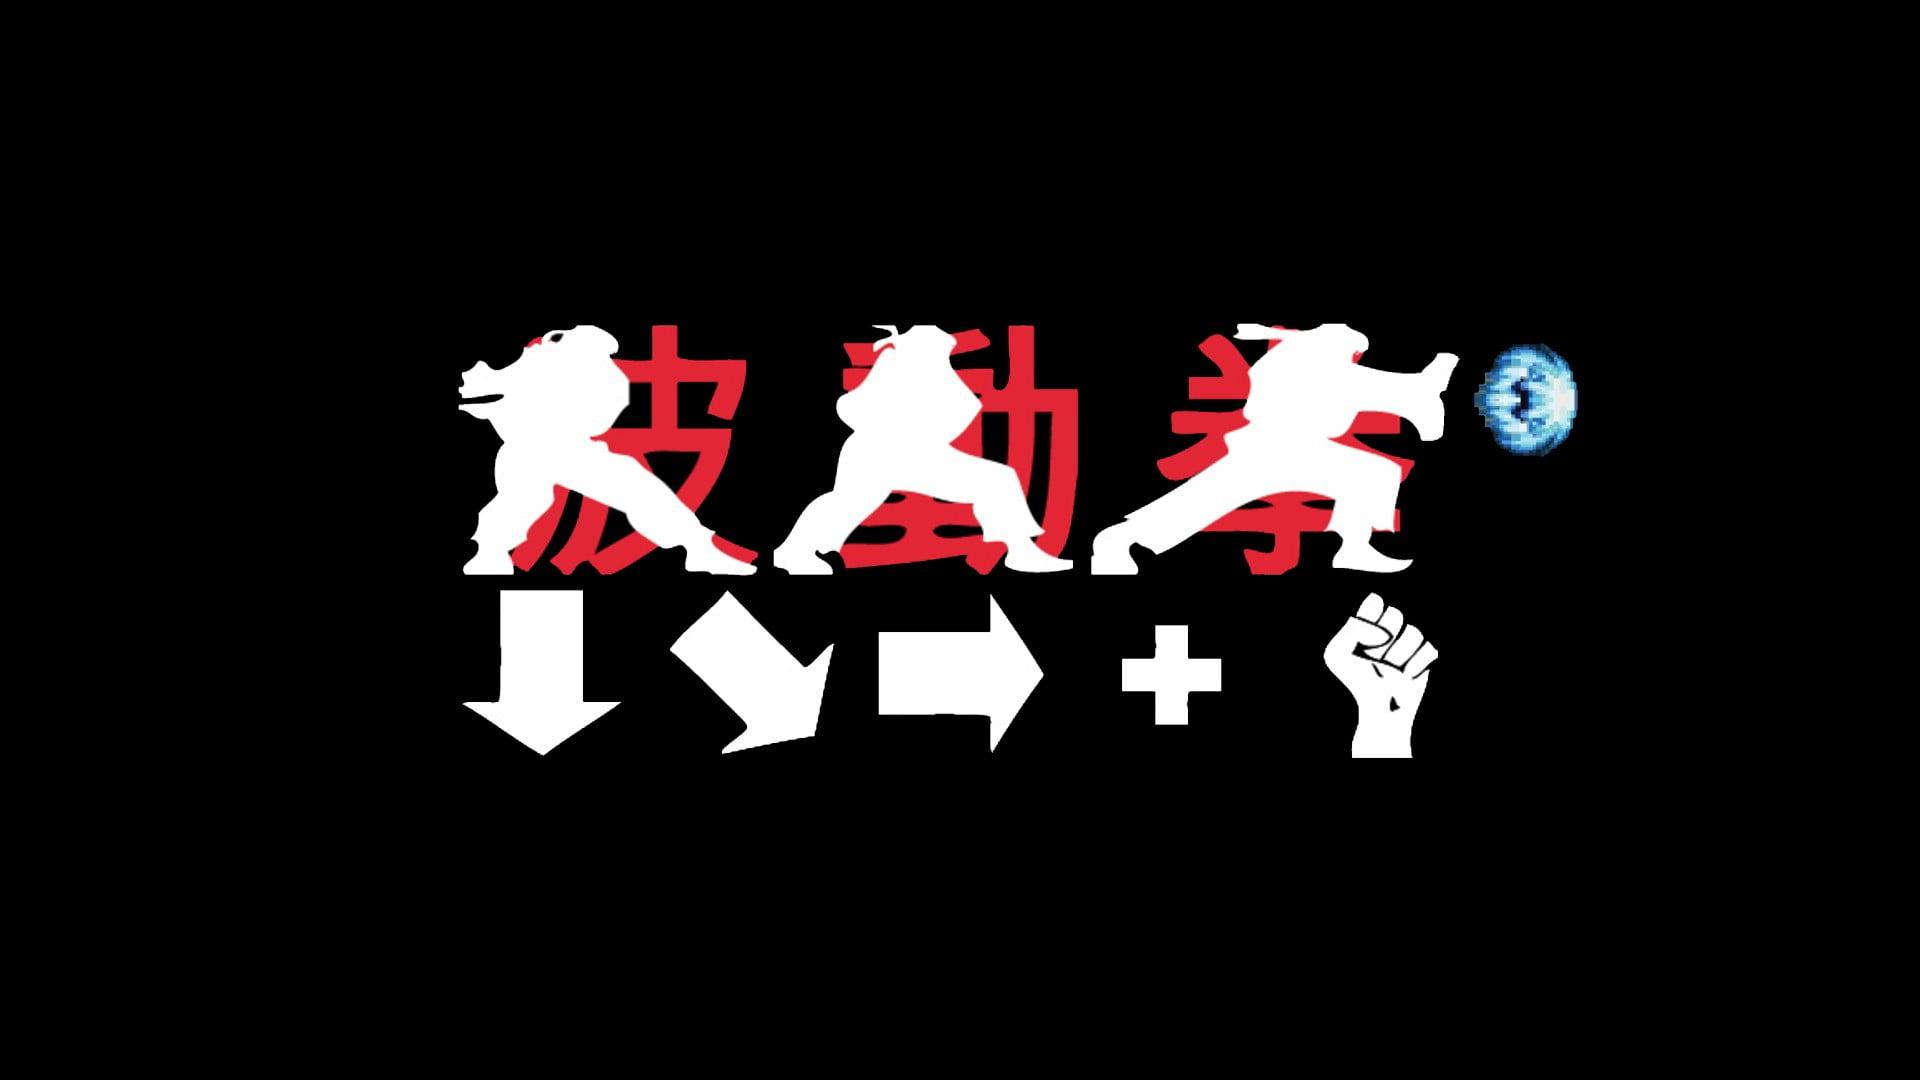 White and red Kanji script logo, Hadouken, Street Fighter.